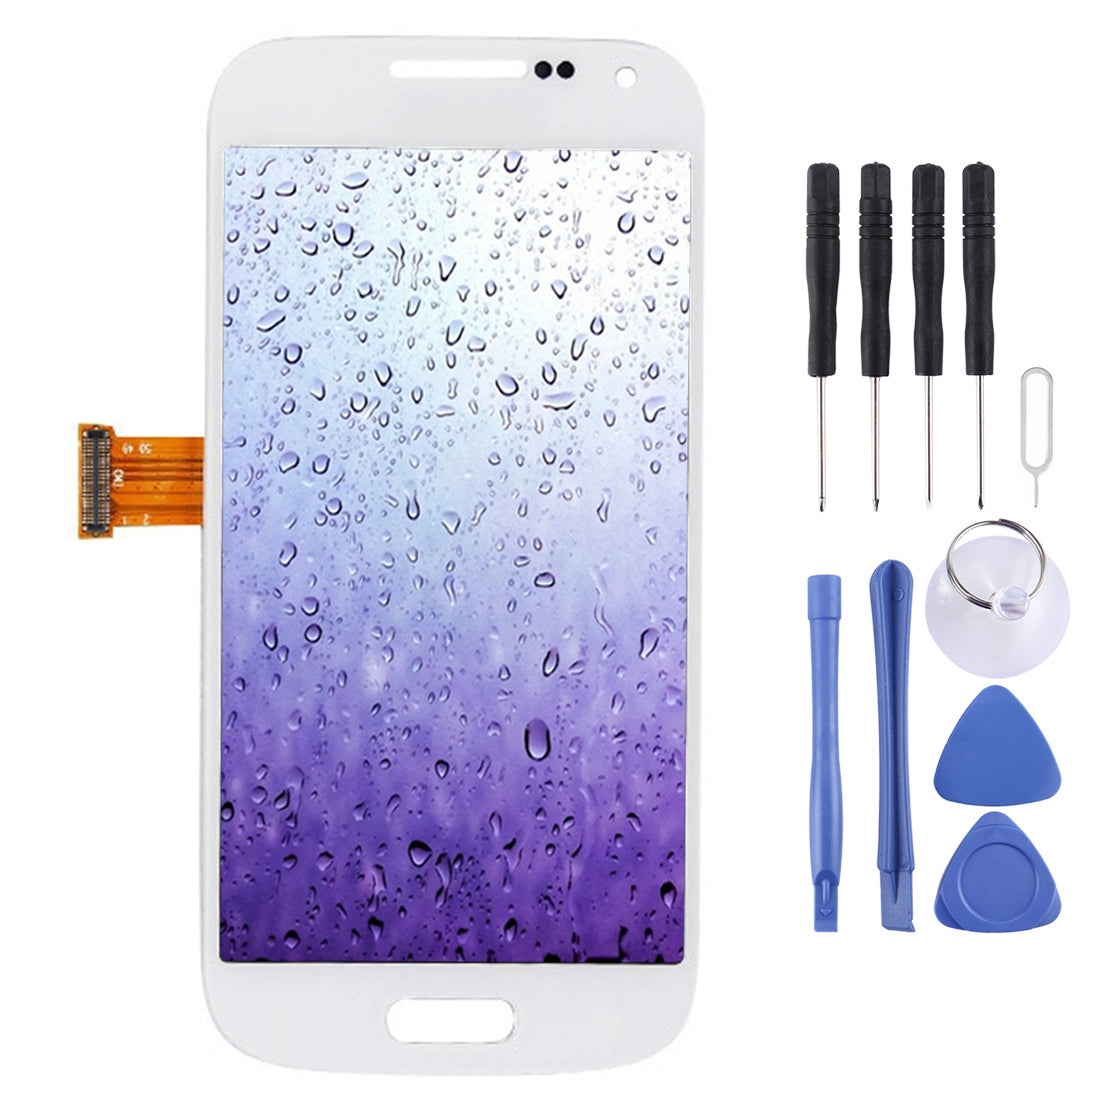 Pantalla LCD + Tactil Digitalizador Samsung Galaxy S4 Mini i9195 i9190 Blanco